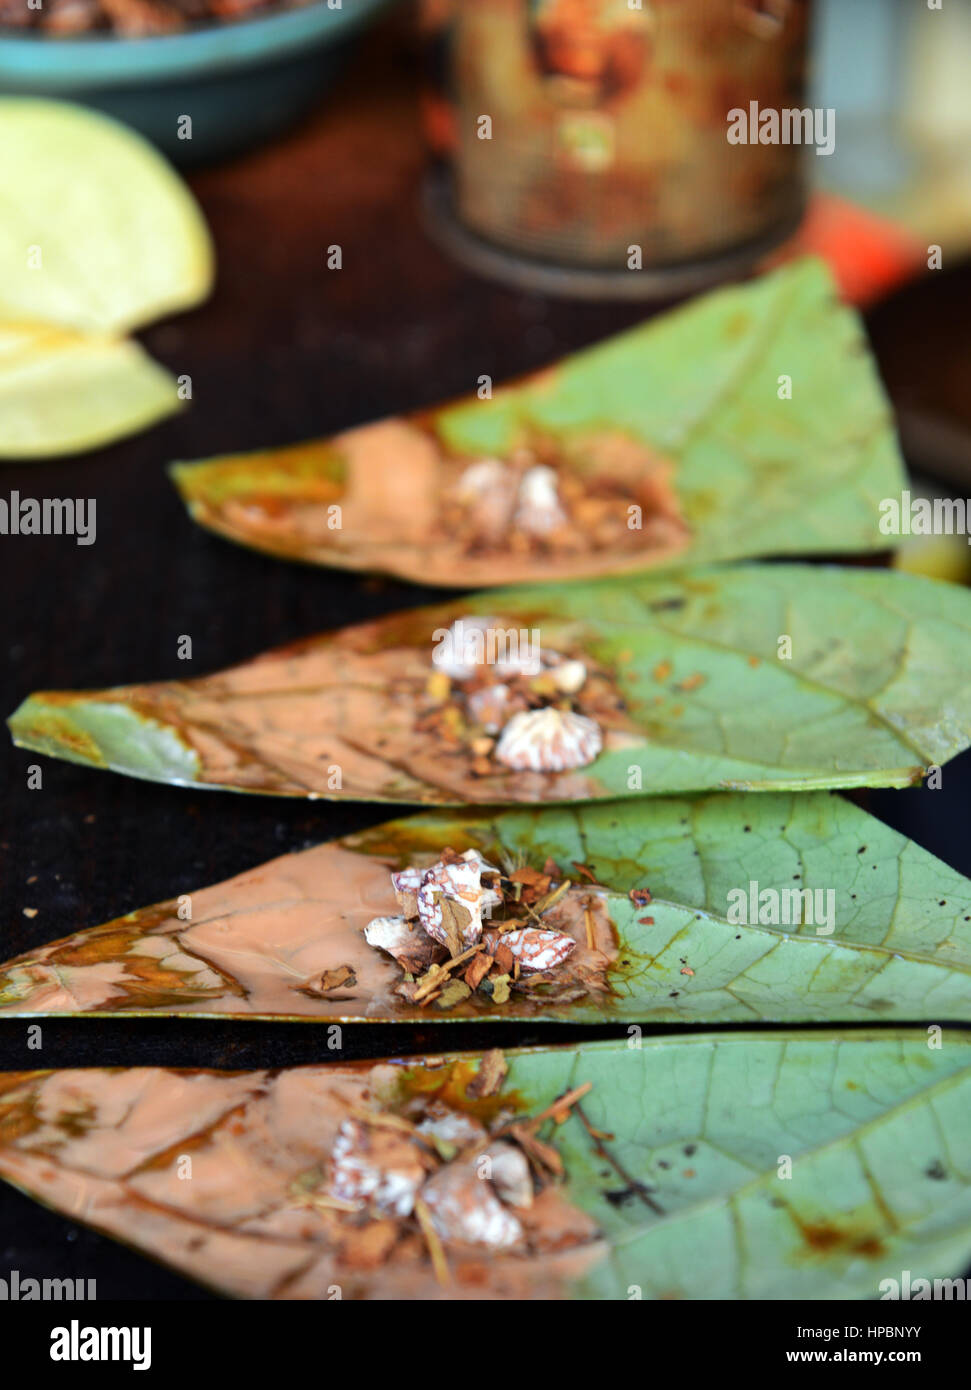 Preparación de paan- Un asiático / South Asian mascar estimulante hecha de una hoja del betel con tuerca Areca aplastado y especias dentro. Foto de stock